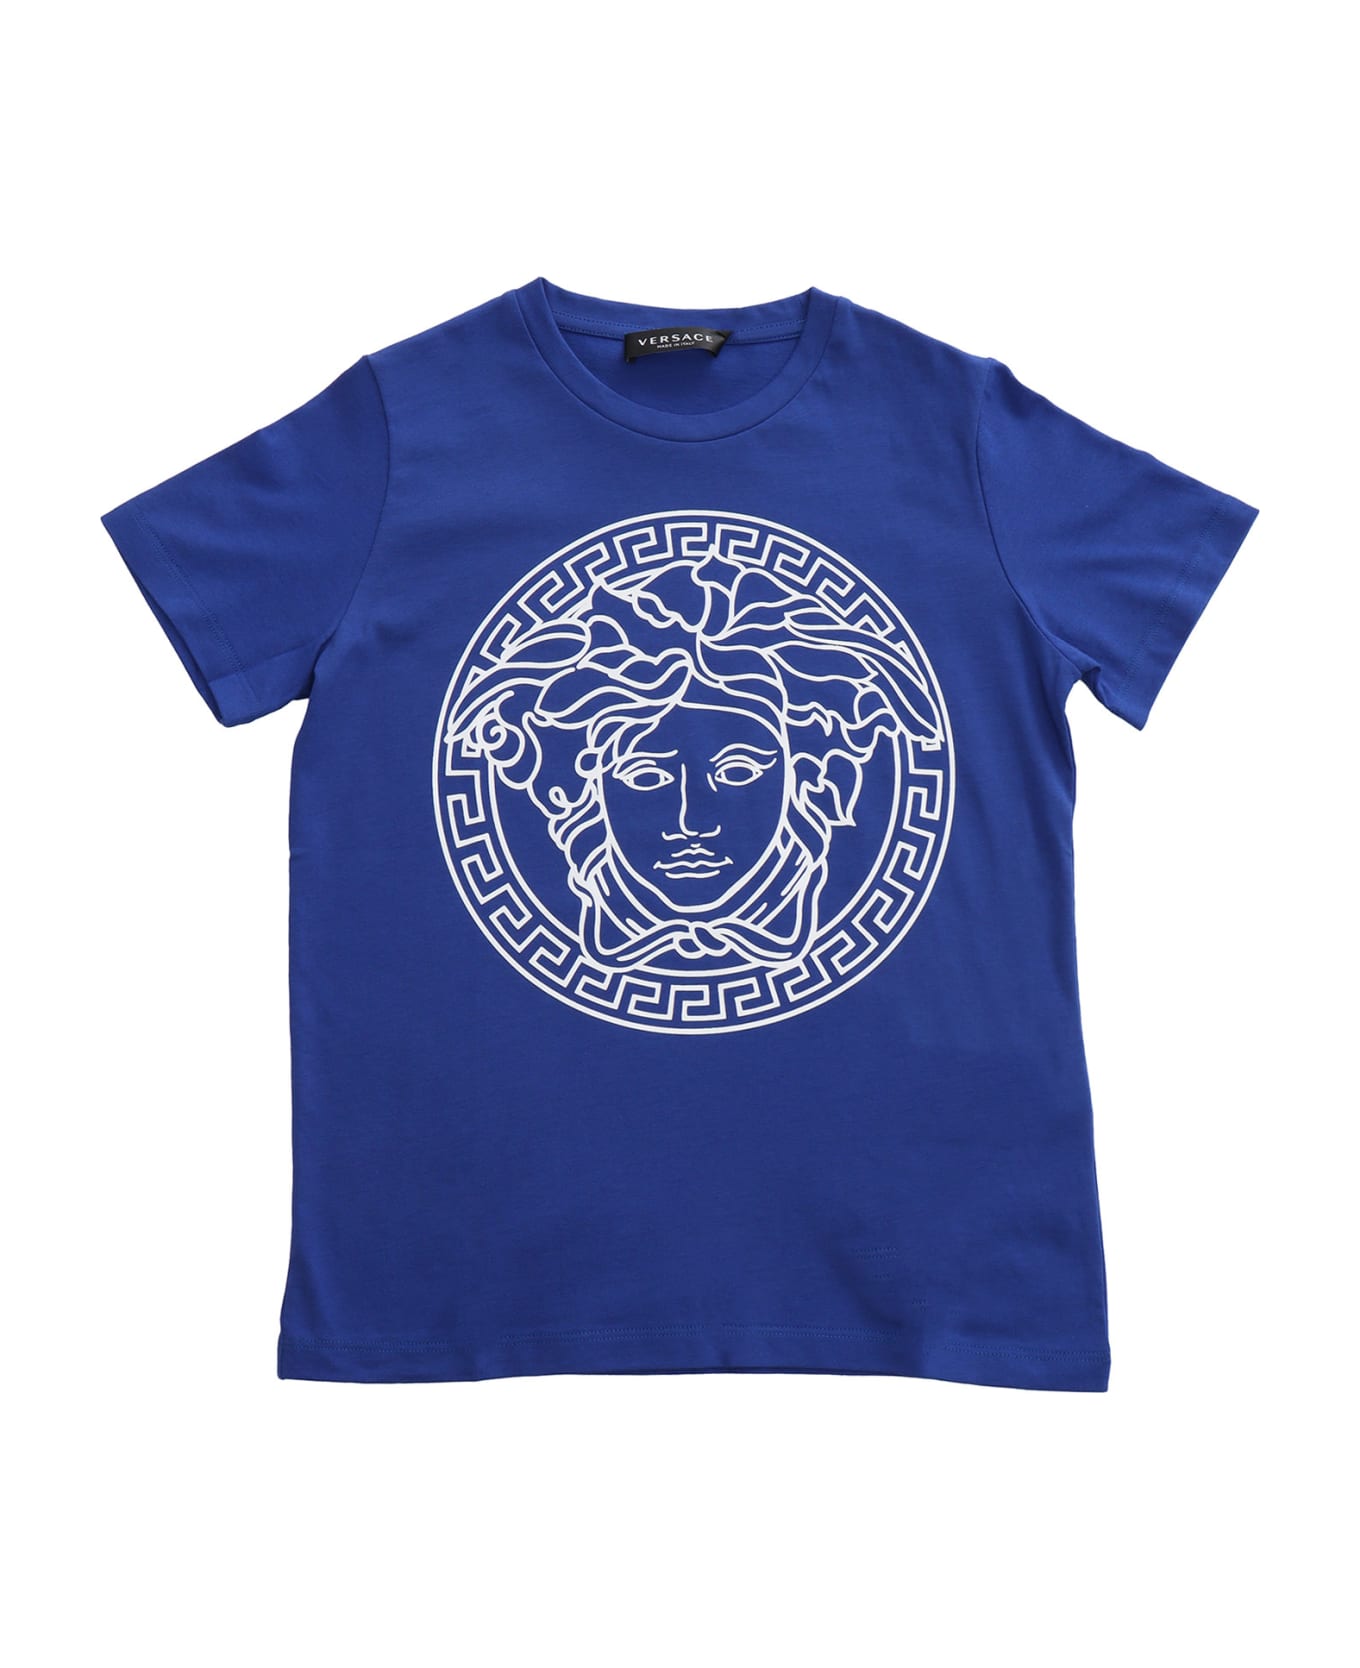 Versace Medusa T-shirt - BLUE